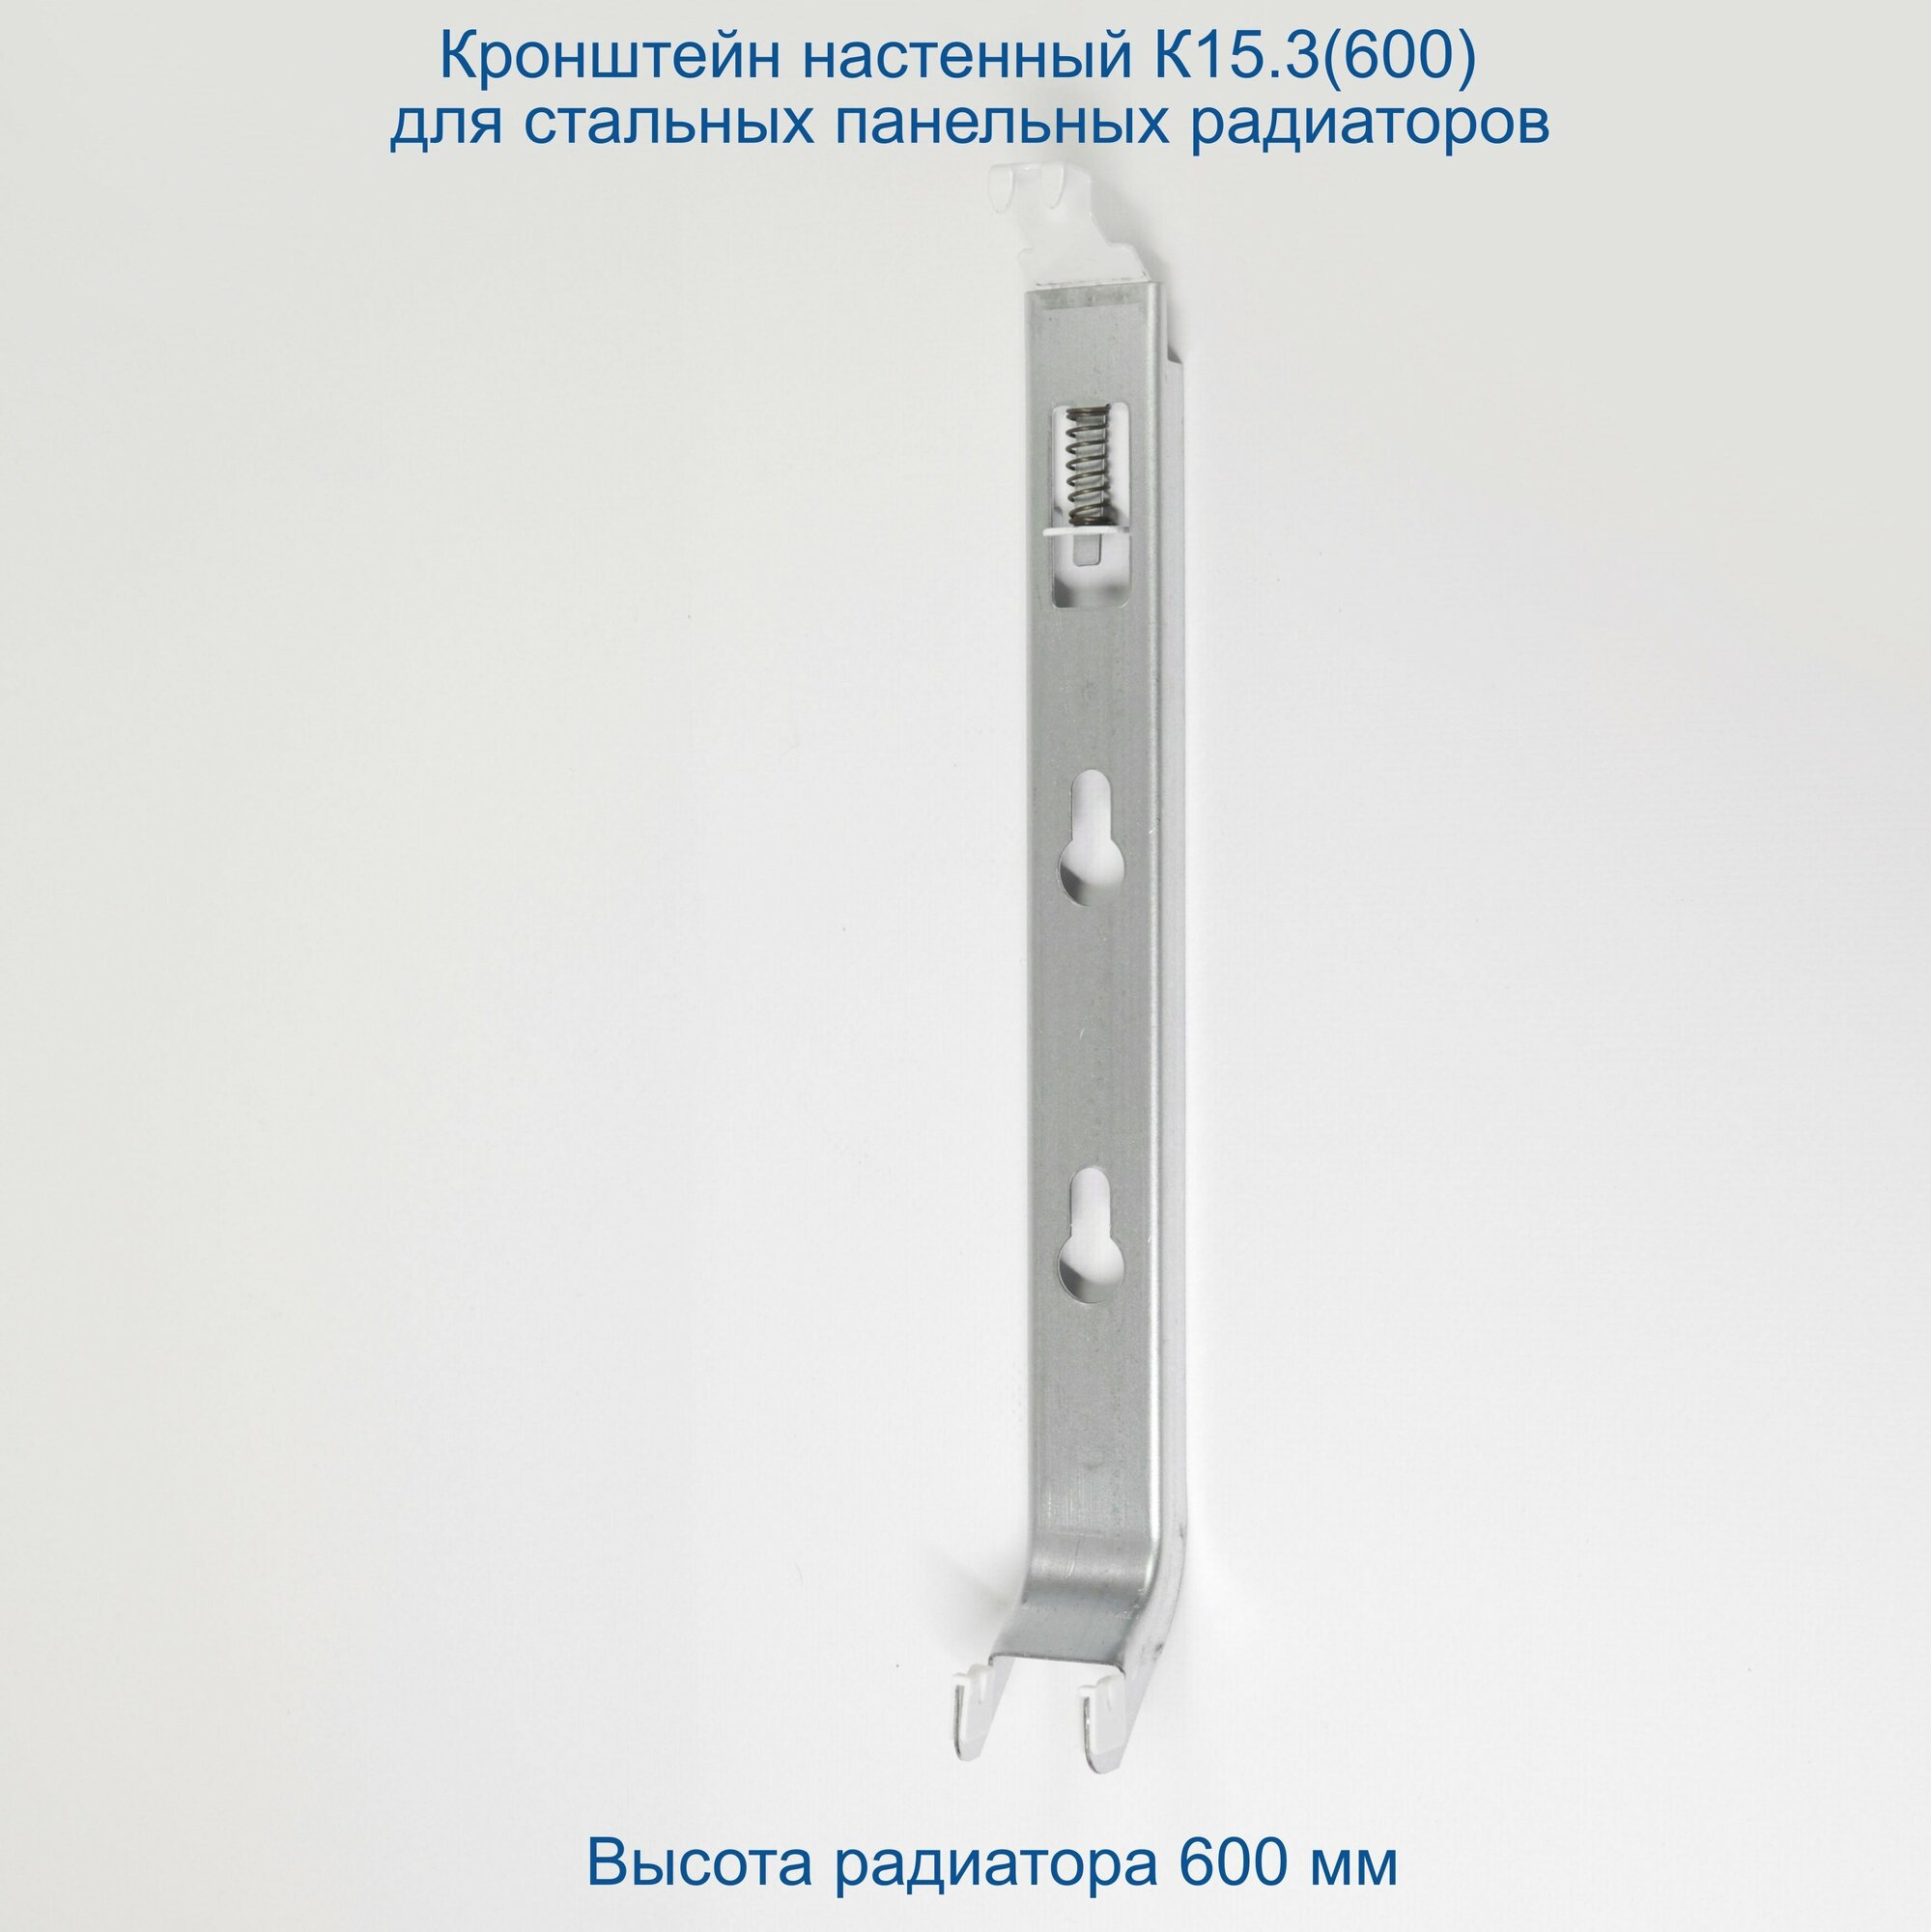 Кронштейн настенный Кайрос К15.3 (600) для стальных панельных радиаторов высотой 600 мм